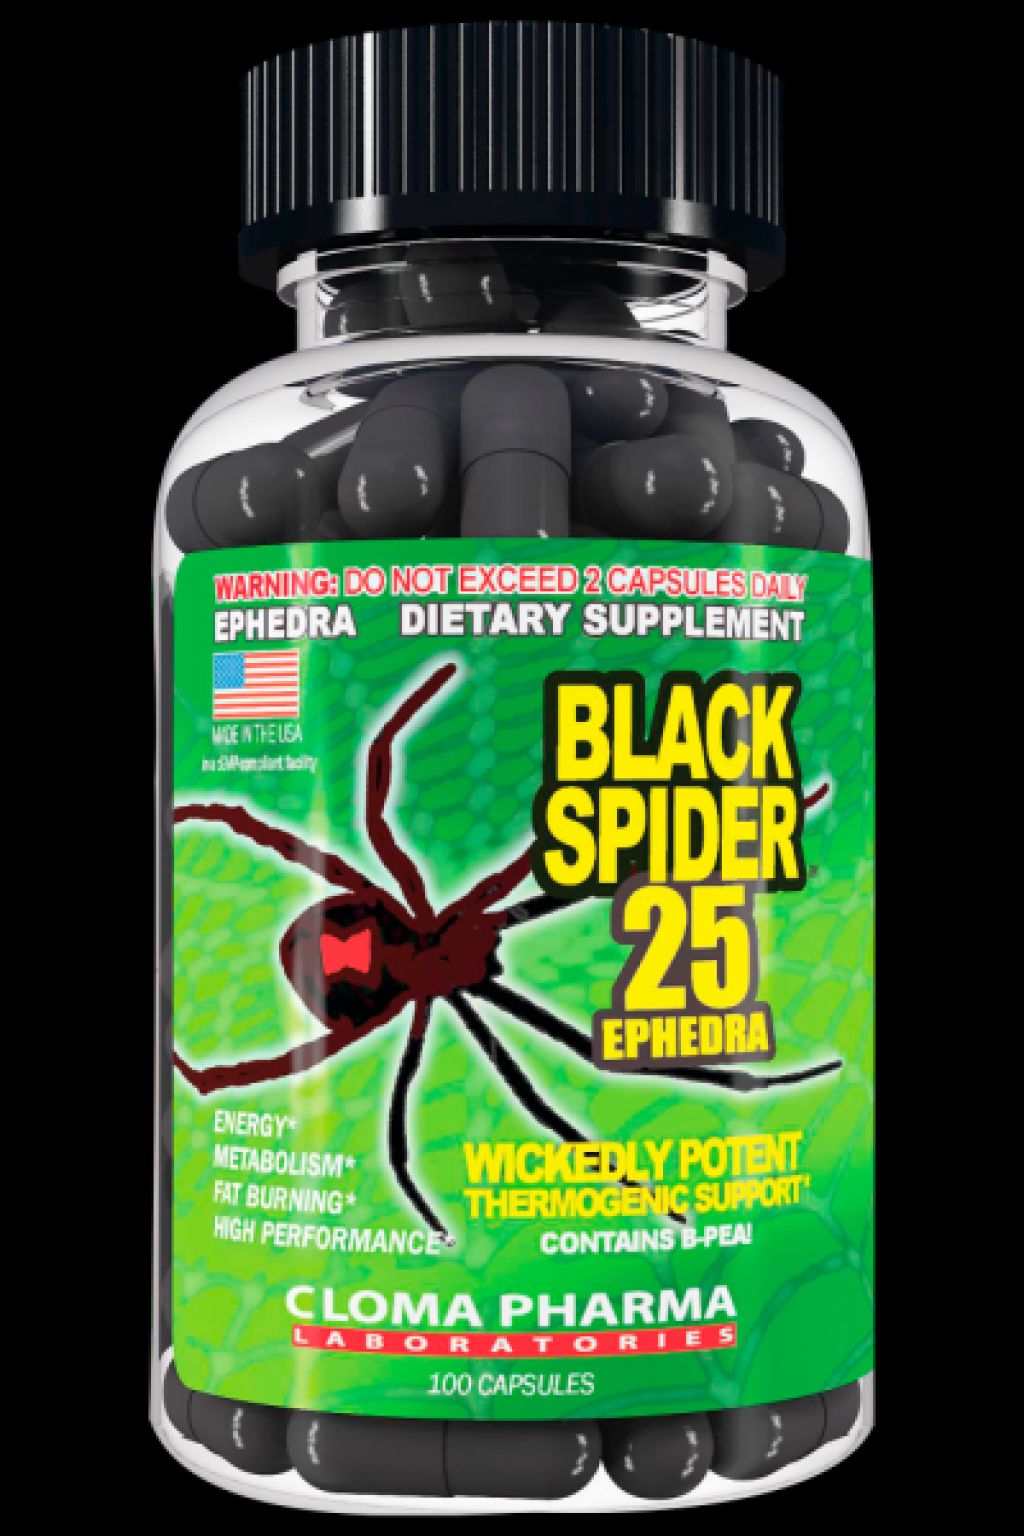 Жиросжигатель black spider 25 ephedra - как принимать?